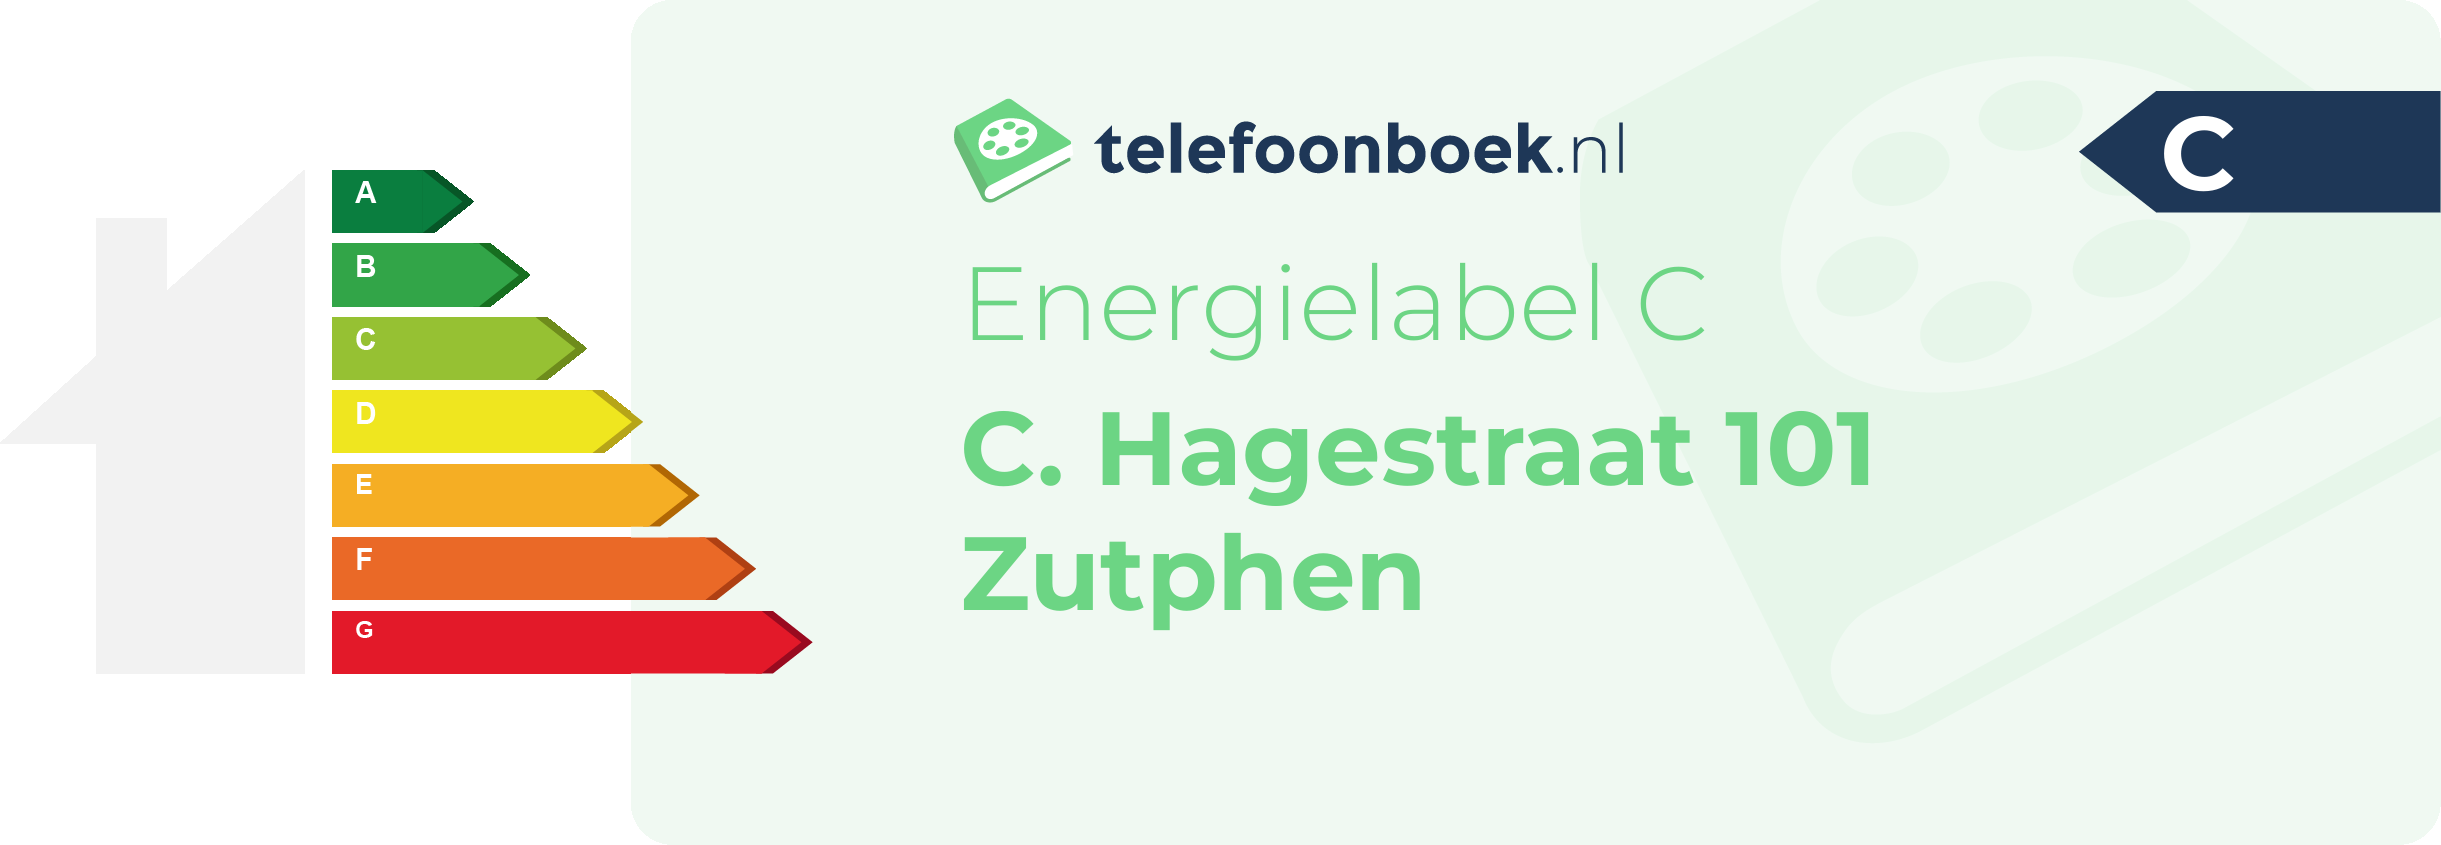 Energielabel C. Hagestraat 101 Zutphen